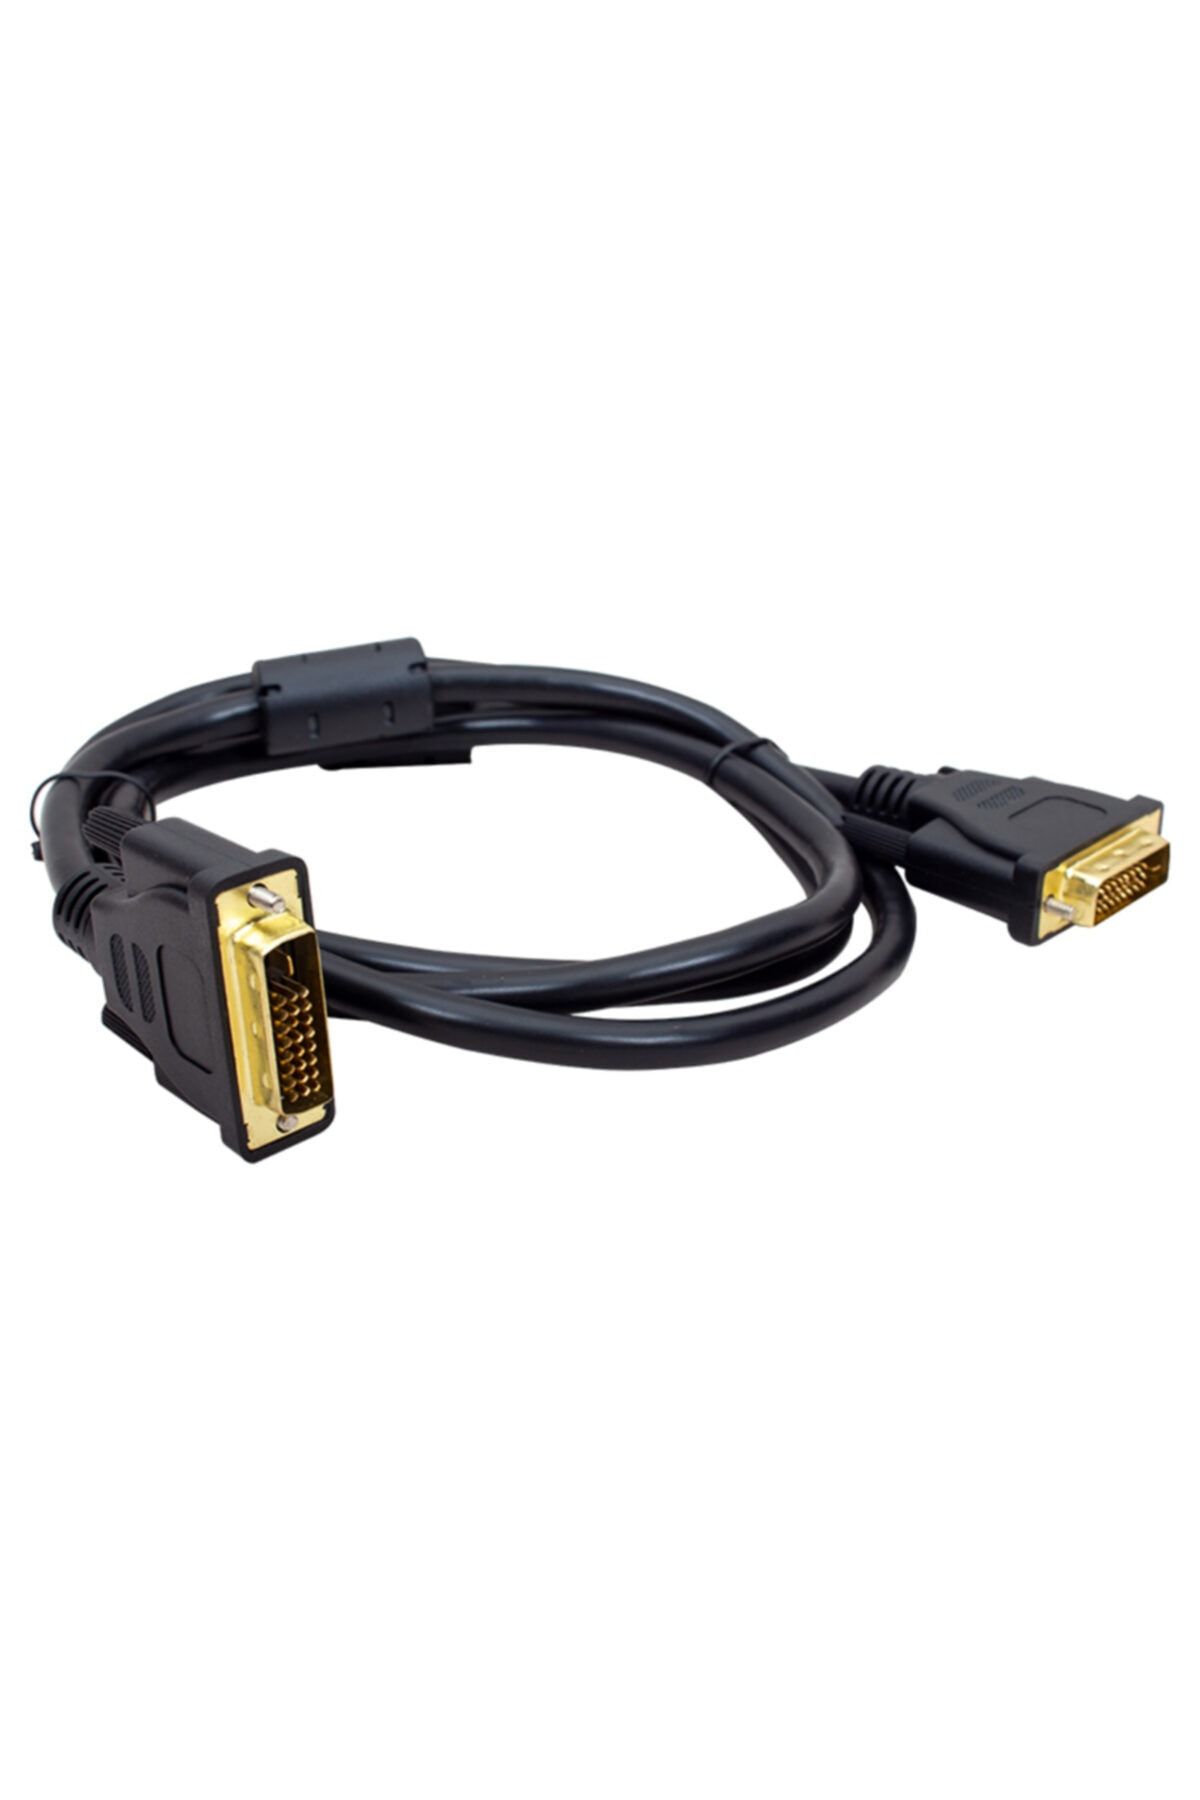 S-Link Dvı-dvı Kablo 1.5 Mt 24+1 (slx-515)